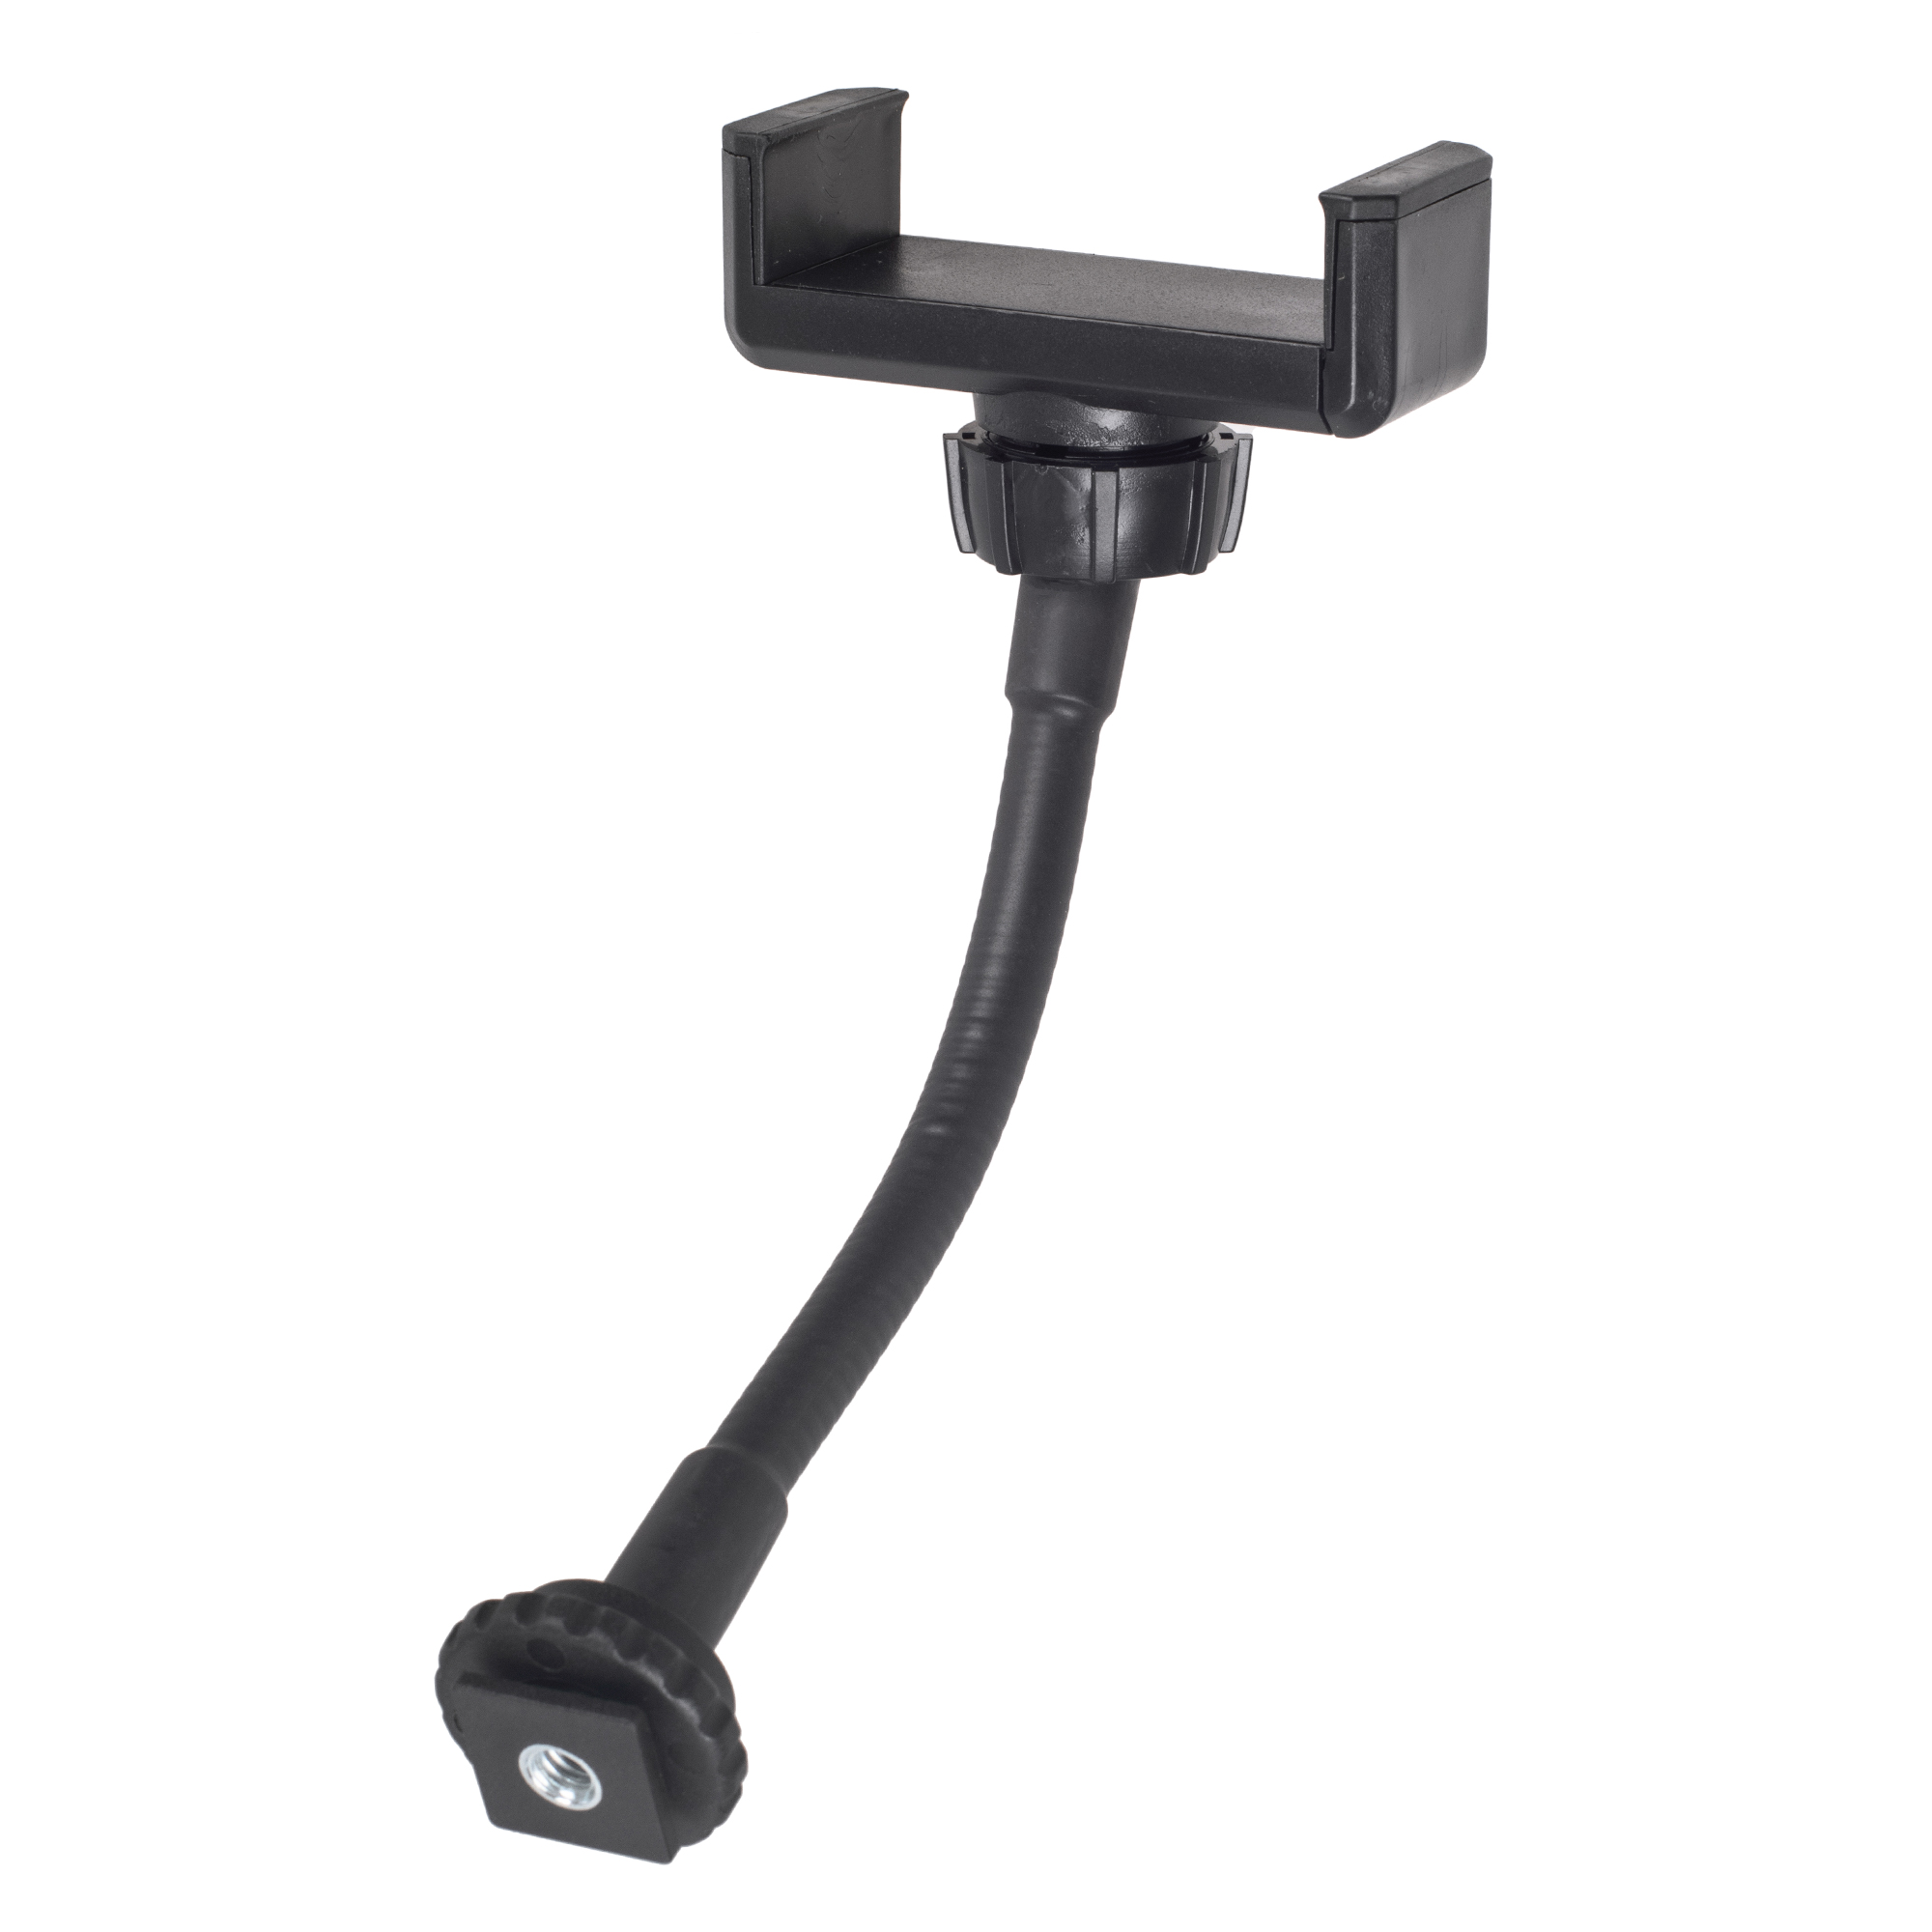 ayex Flexible Smartphone-Halterung für Kameras/Stative etc. mit Blitzschuh oder 1/4 Zoll, mit flexiblem Schwanenhals, schwenkbar - Smartphone-Halterung für Kameras, beständig und robust - Phone Clamp holder